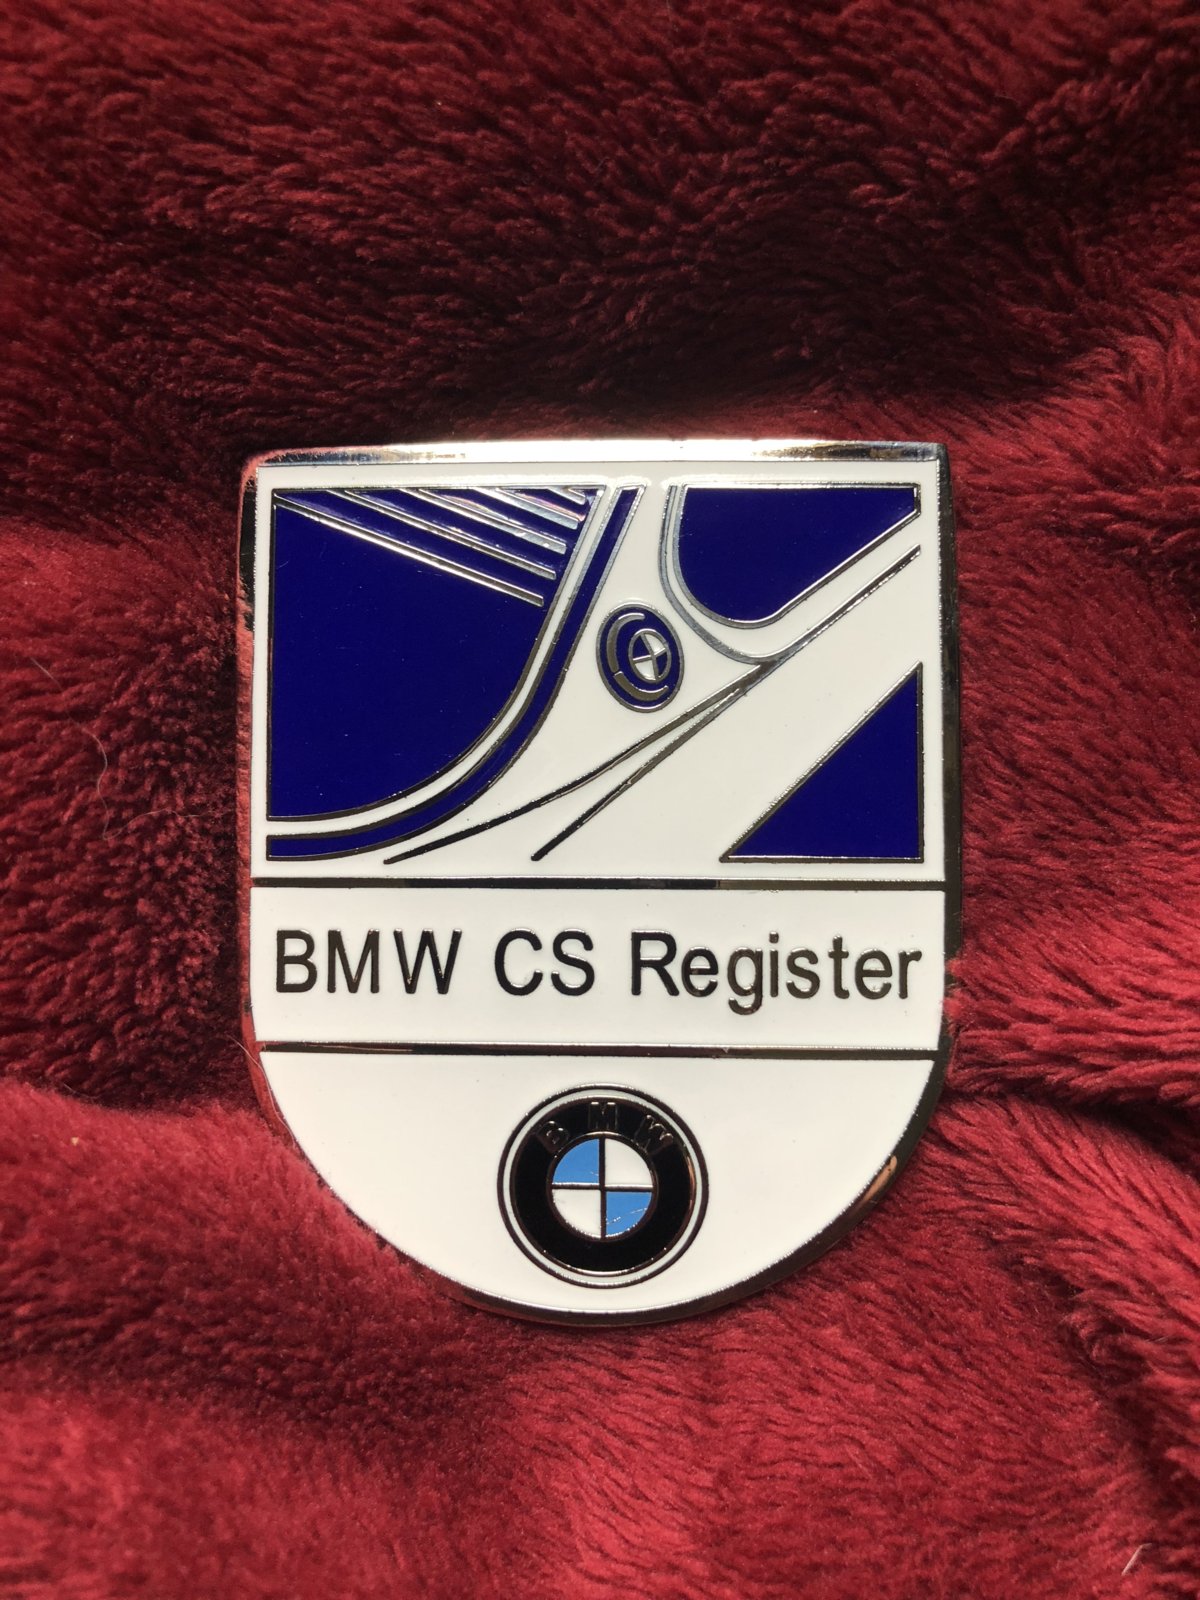 BMW CS Register Badge.jpg